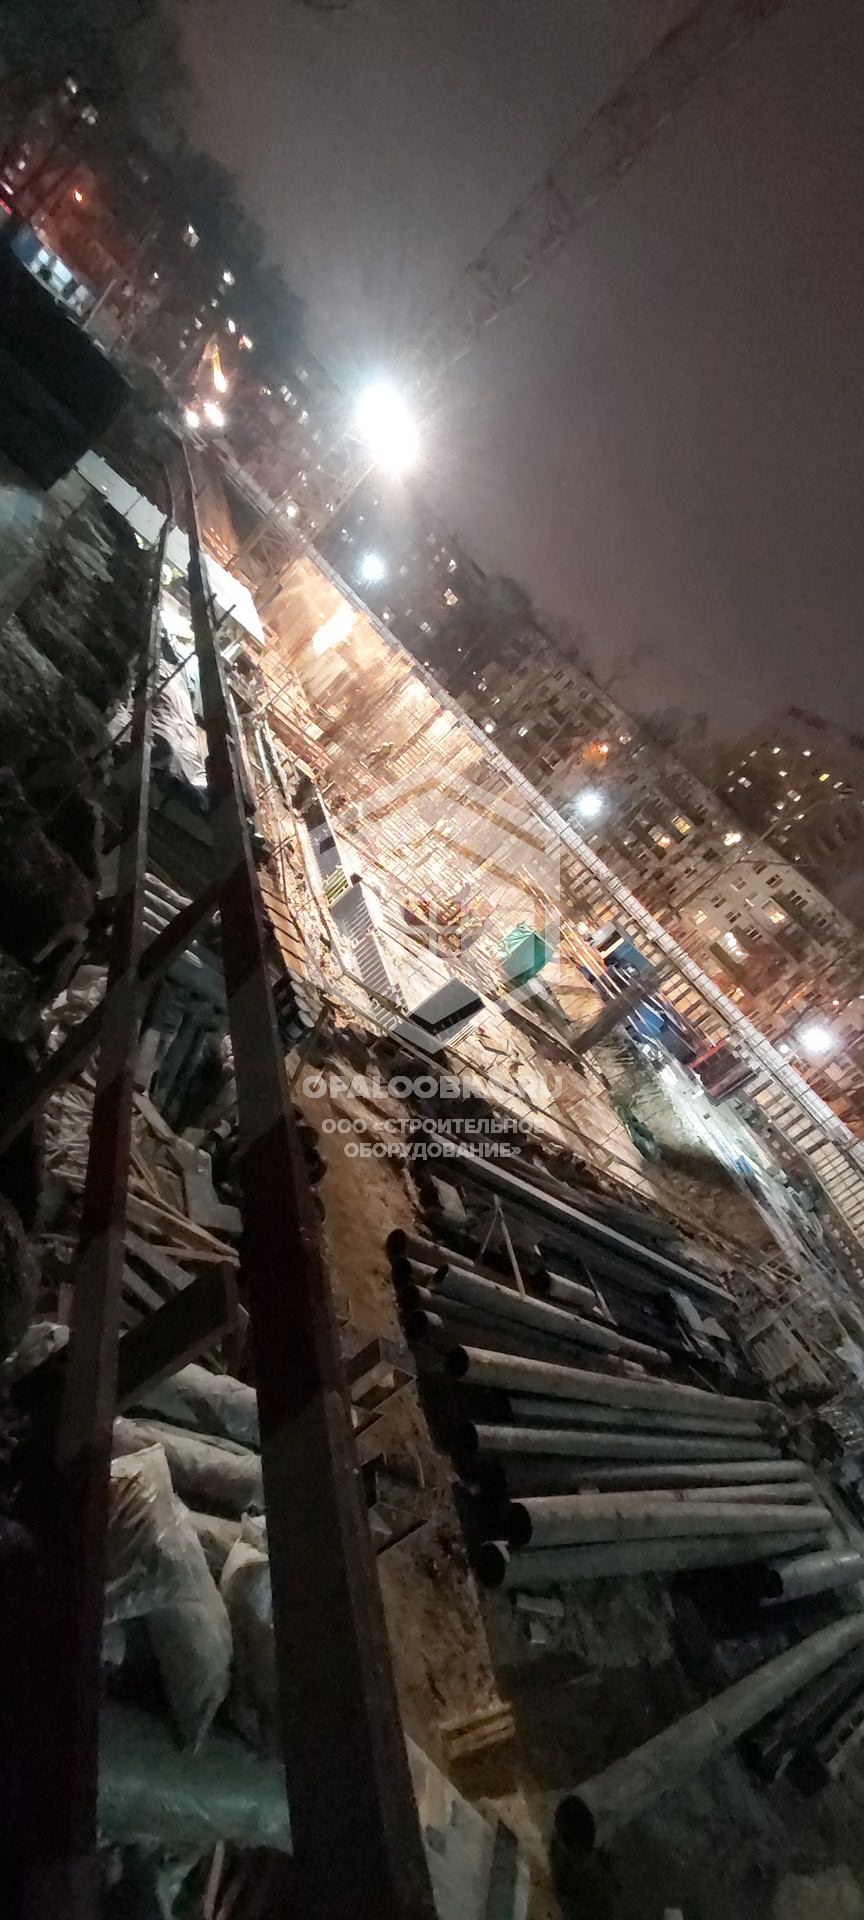 Крупнощитовая опалубка для программы реновации жилищного фонда Москвы